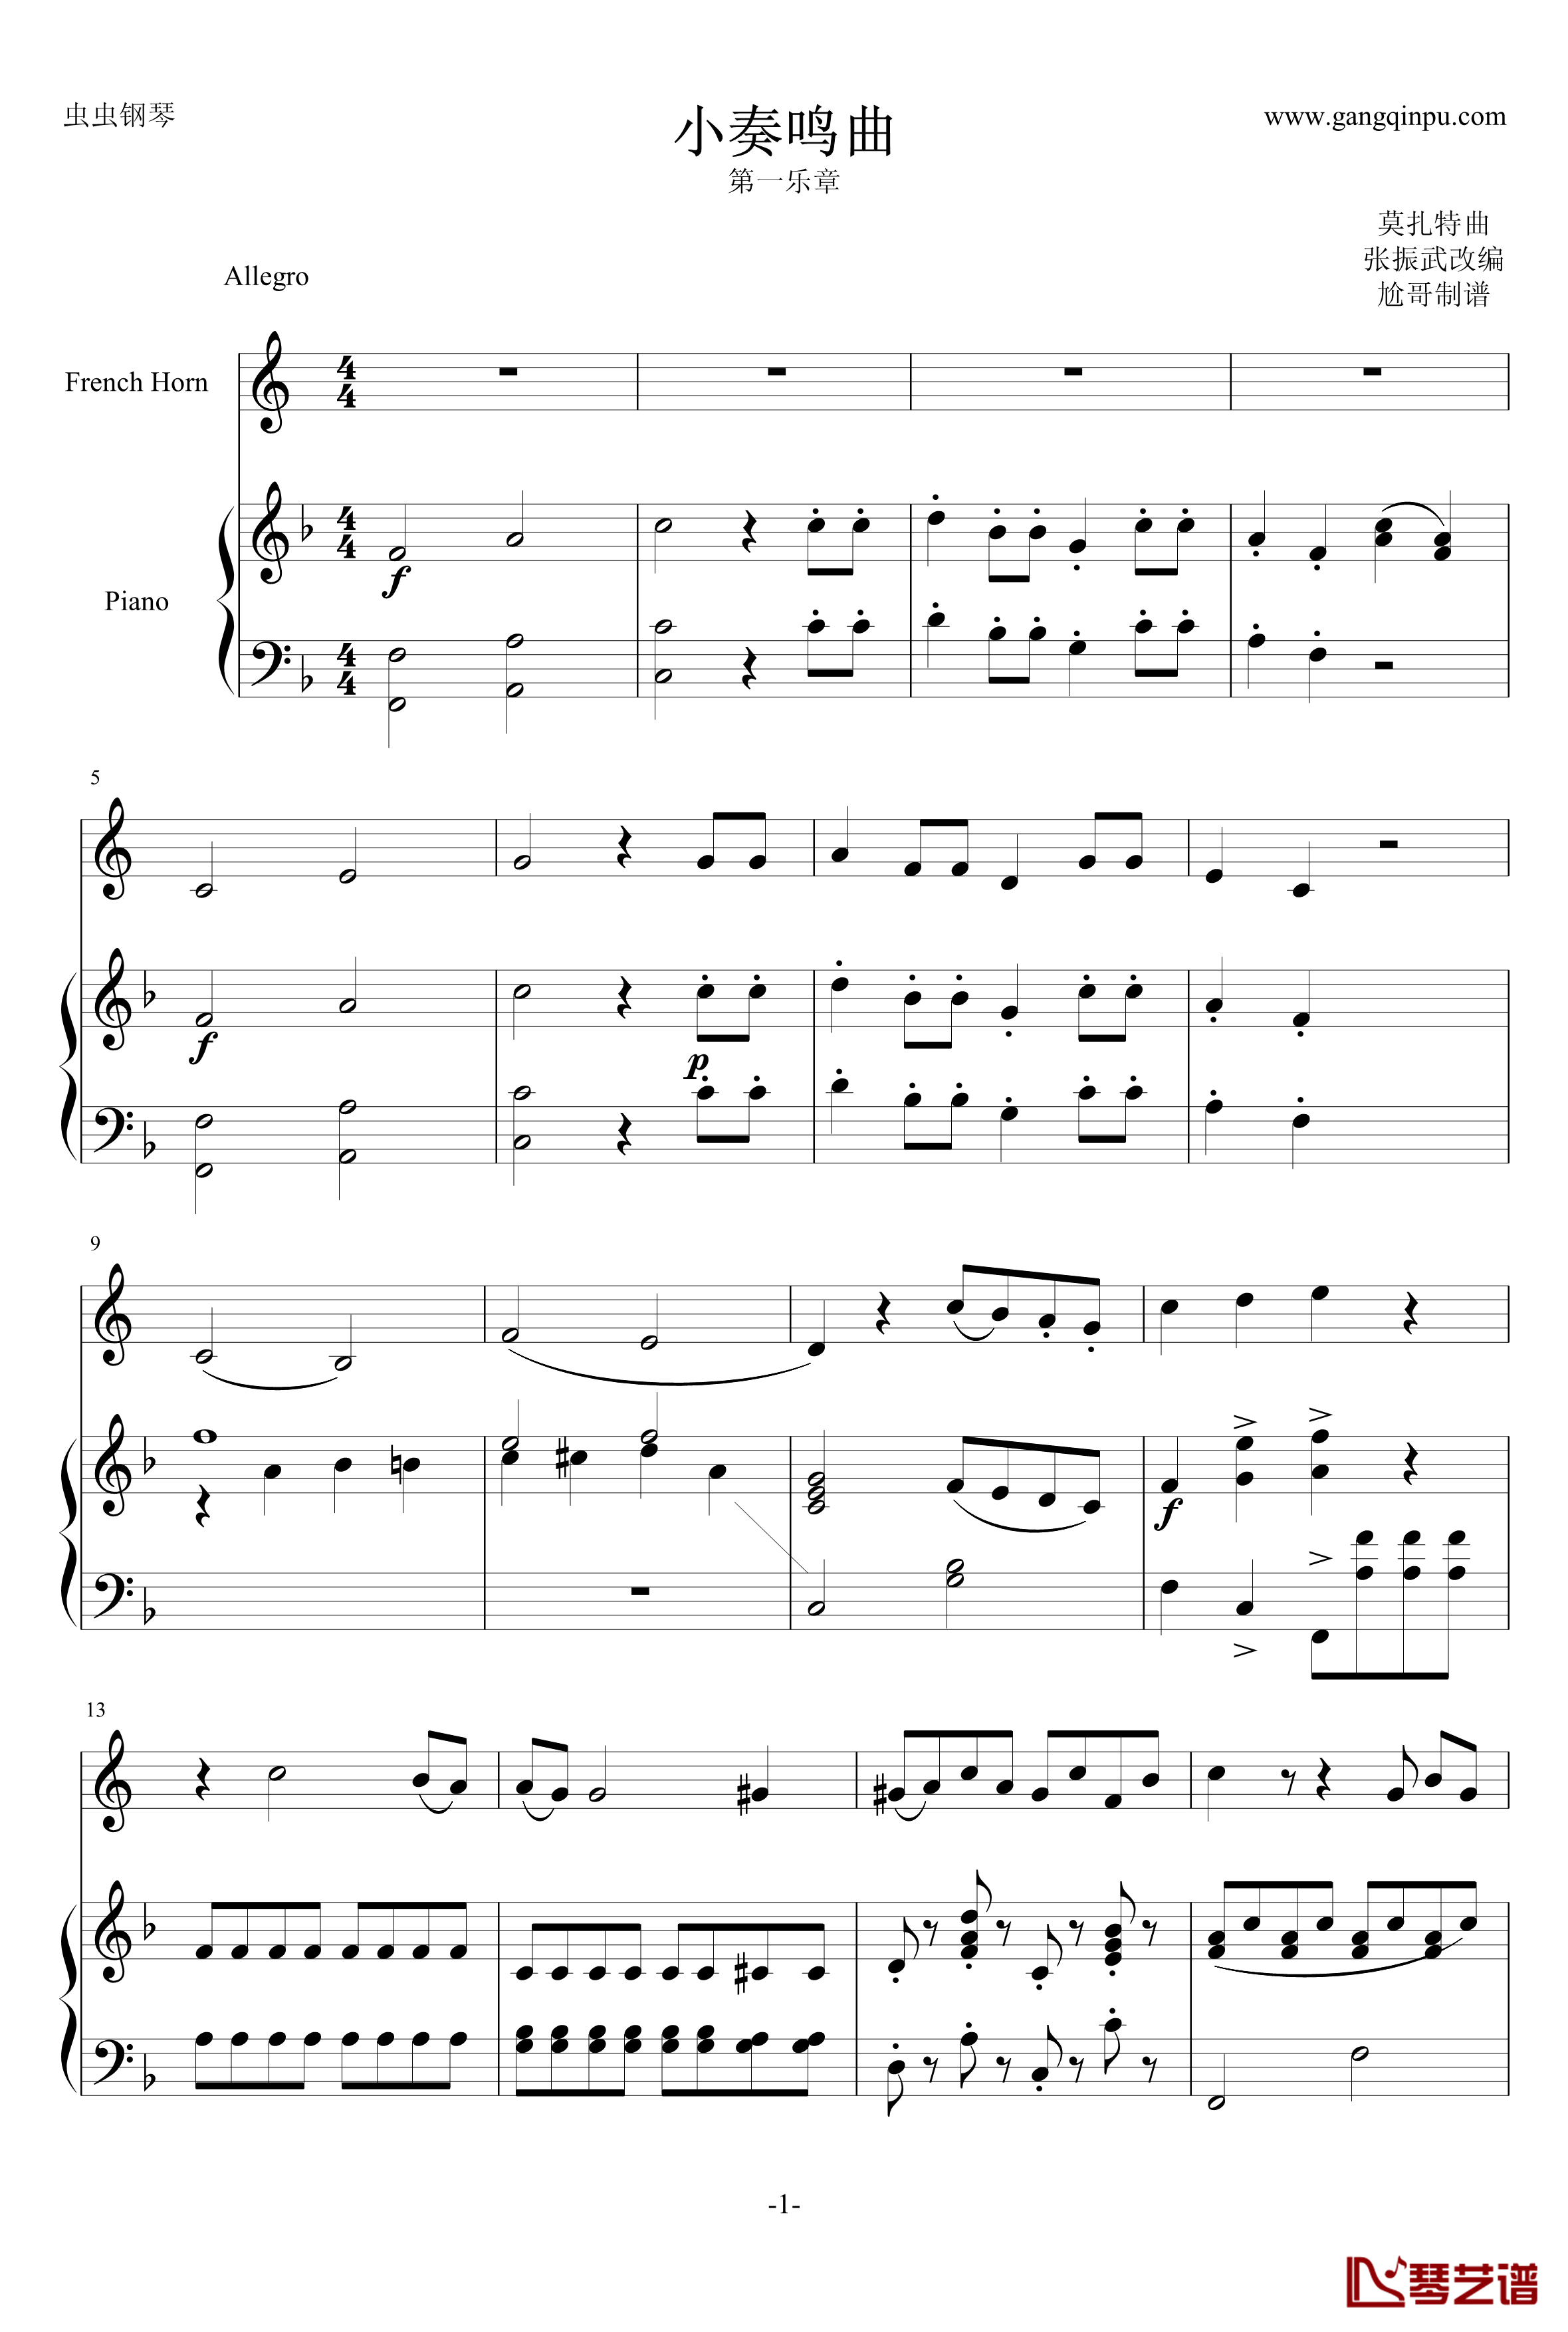 小奏鸣曲钢琴谱-莫扎特1